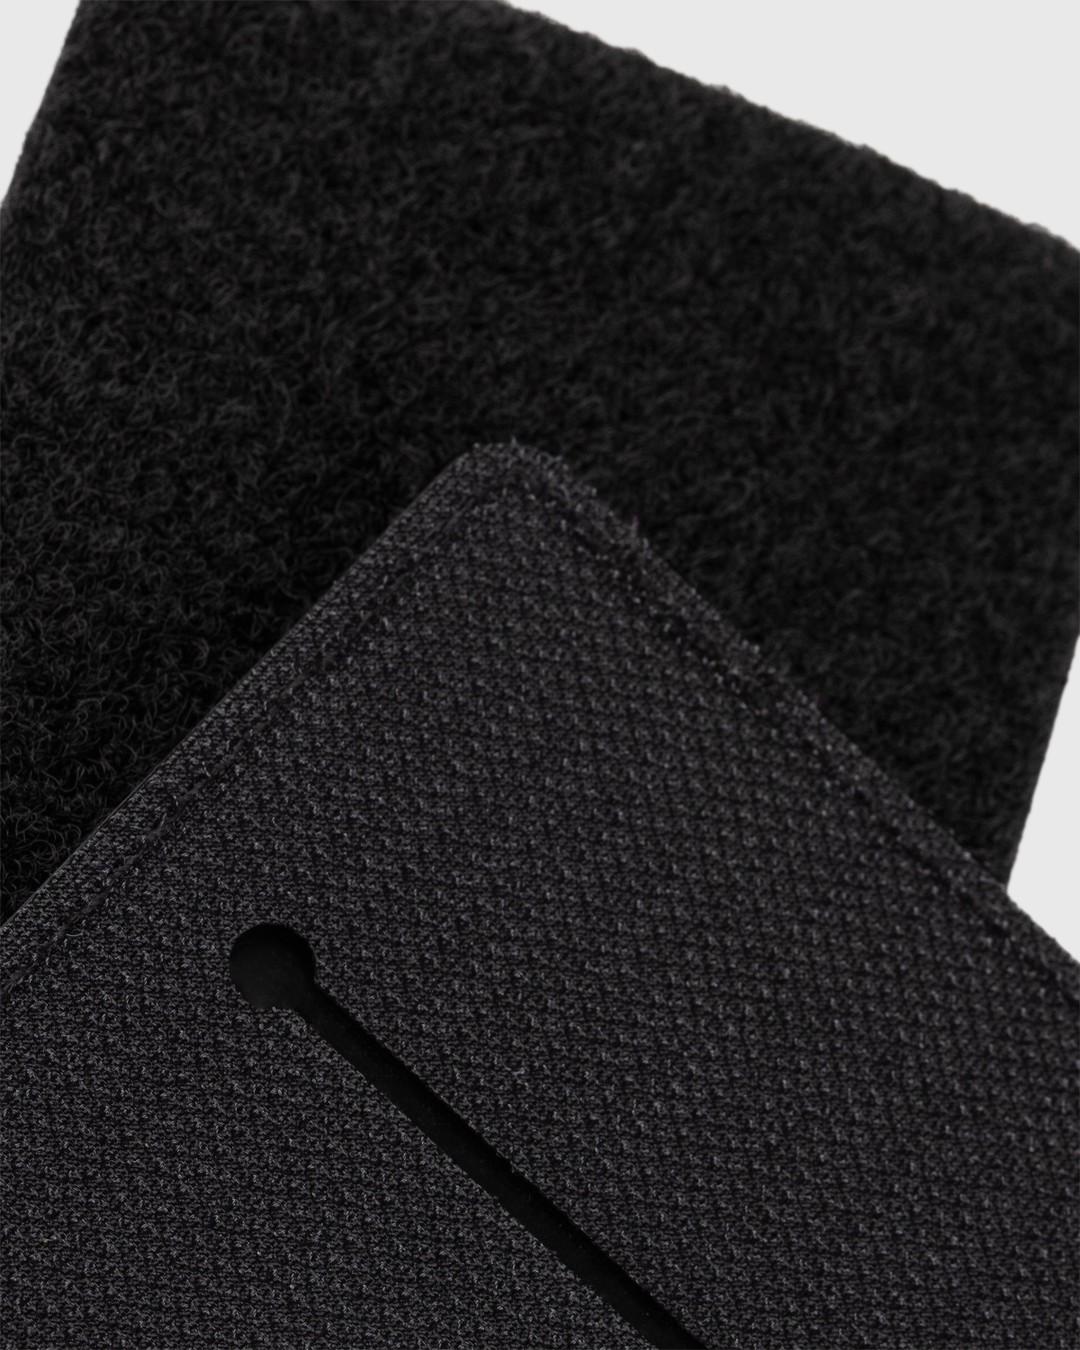 Affix – Standardized Stash Patch Black - Desk Accessories - Black - Image 2